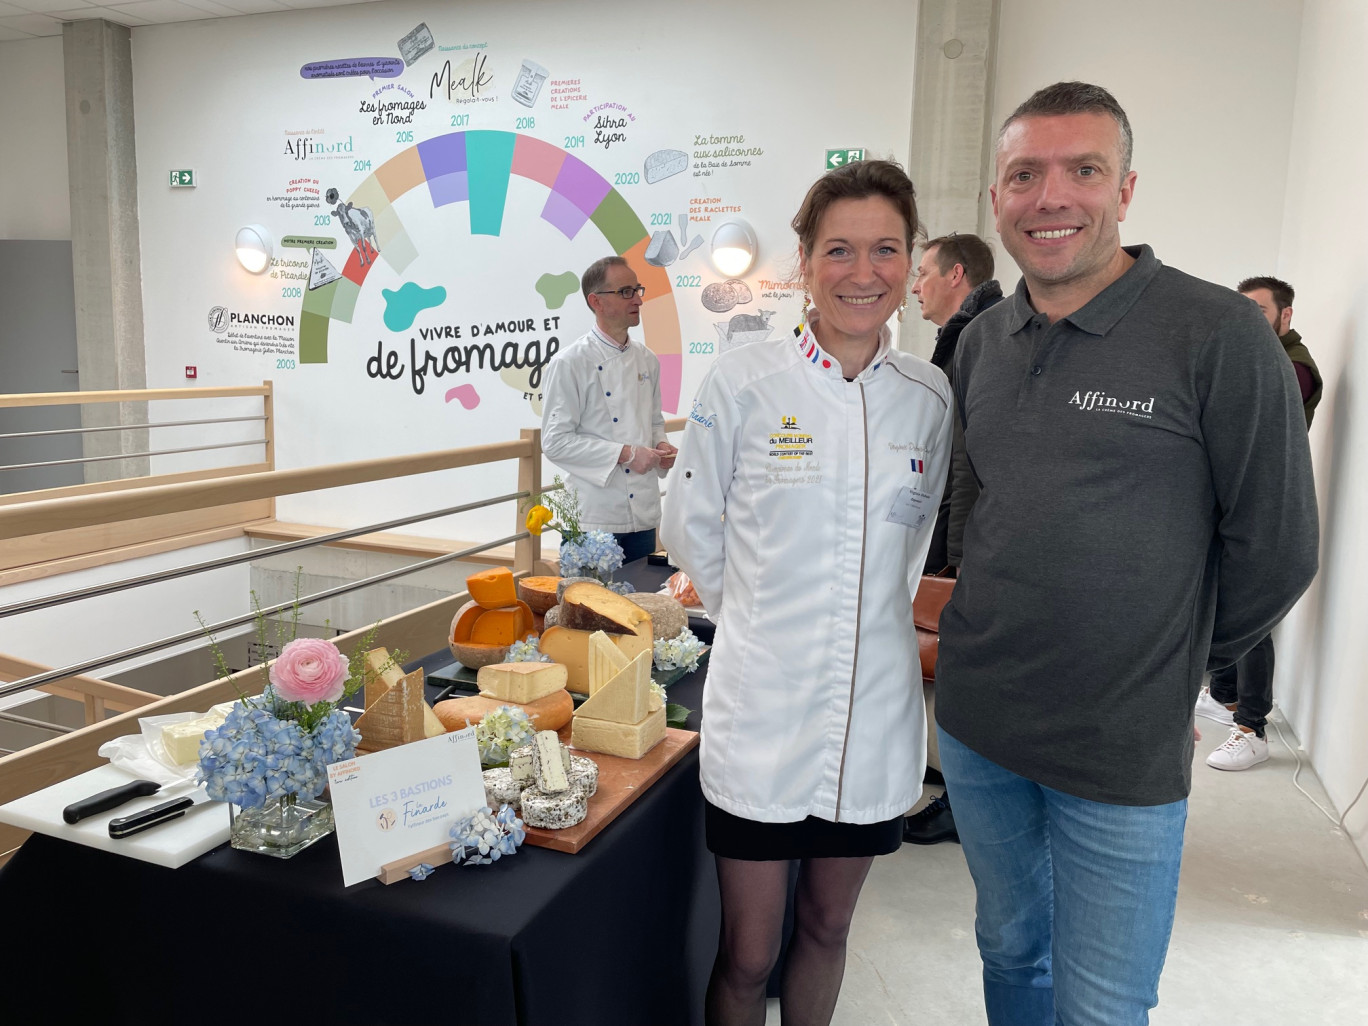  Julien Planchon, co-fondateur de l'entreprise Affinord, avec Virginie Dubois-Dhorne, élue meilleure fromagère du monde en 2021.